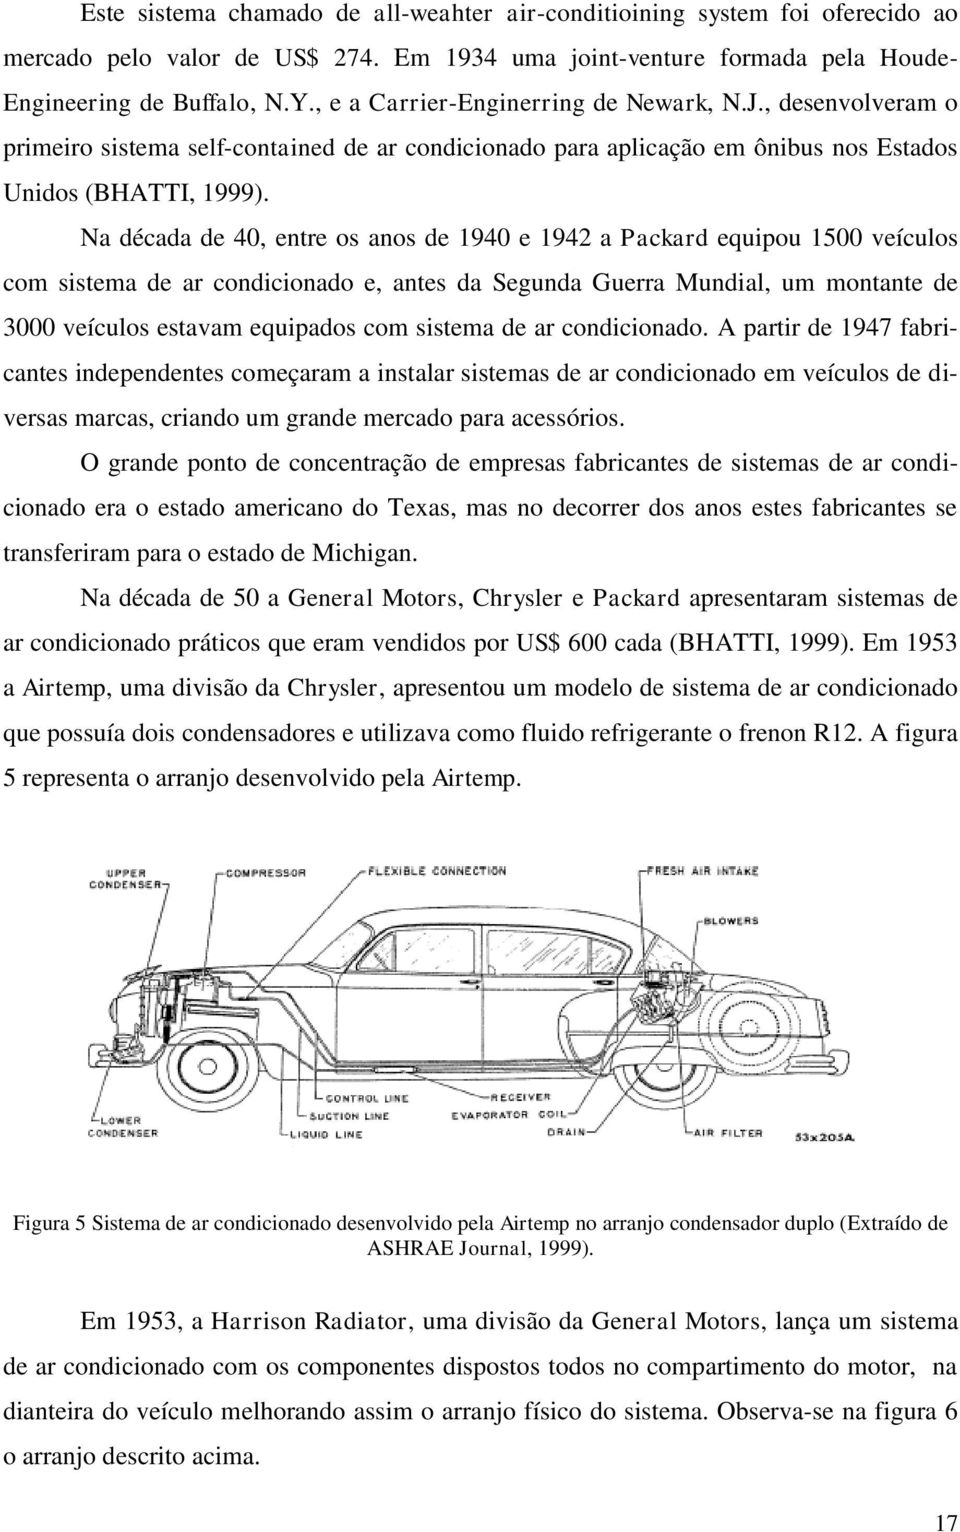 Na década de 40, entre os anos de 1940 e 1942 a Packard equipou 1500 veículos com sistema de ar condicionado e, antes da Segunda Guerra Mundial, um montante de 3000 veículos estavam equipados com